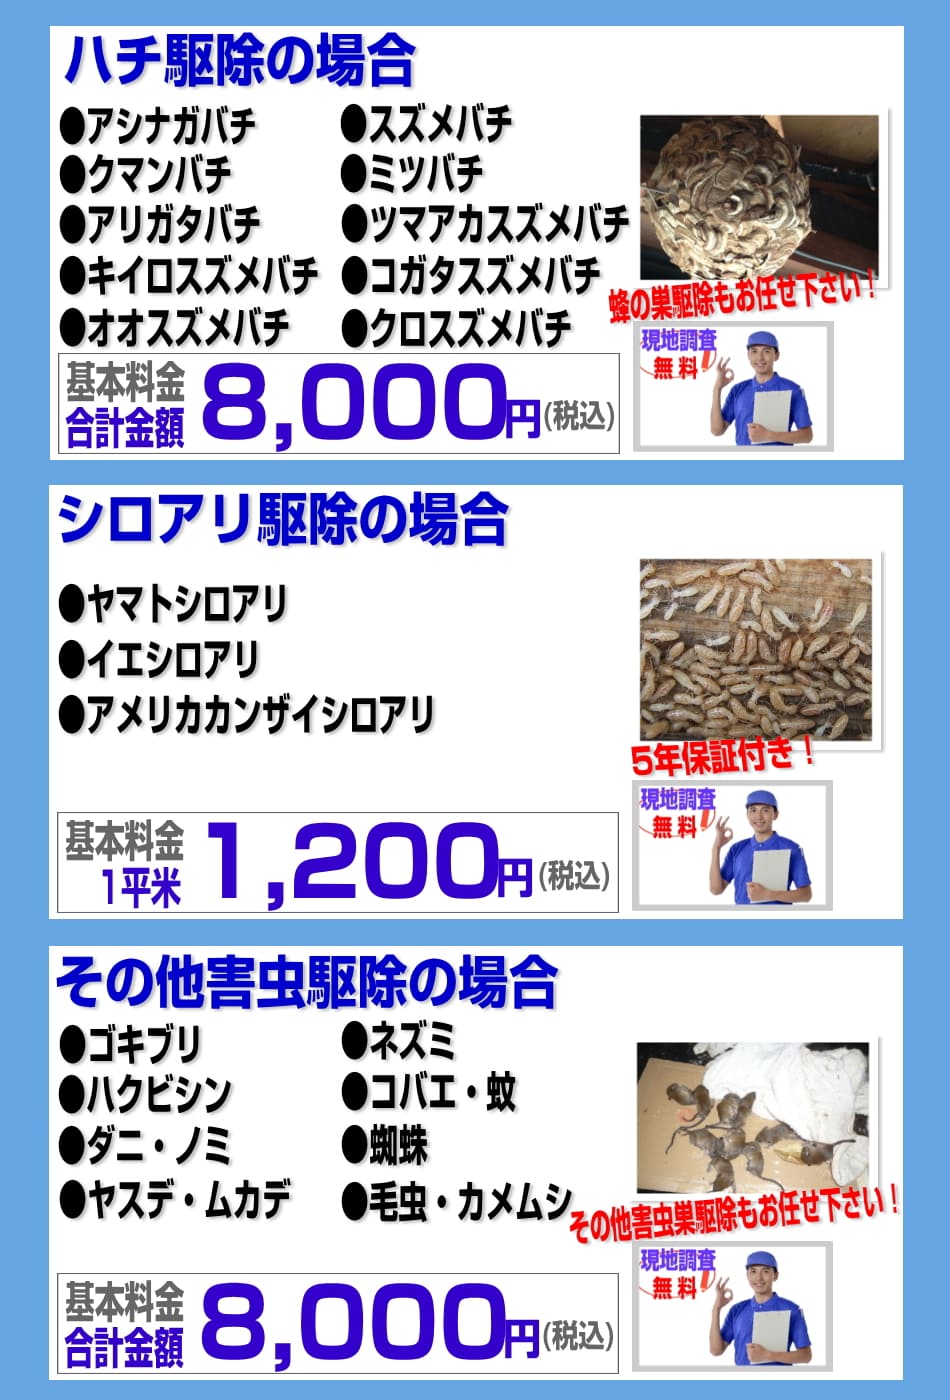 神奈川のハチ駆除8000円、シロアリ駆除平米1200円、その他の害虫駆除8000円より